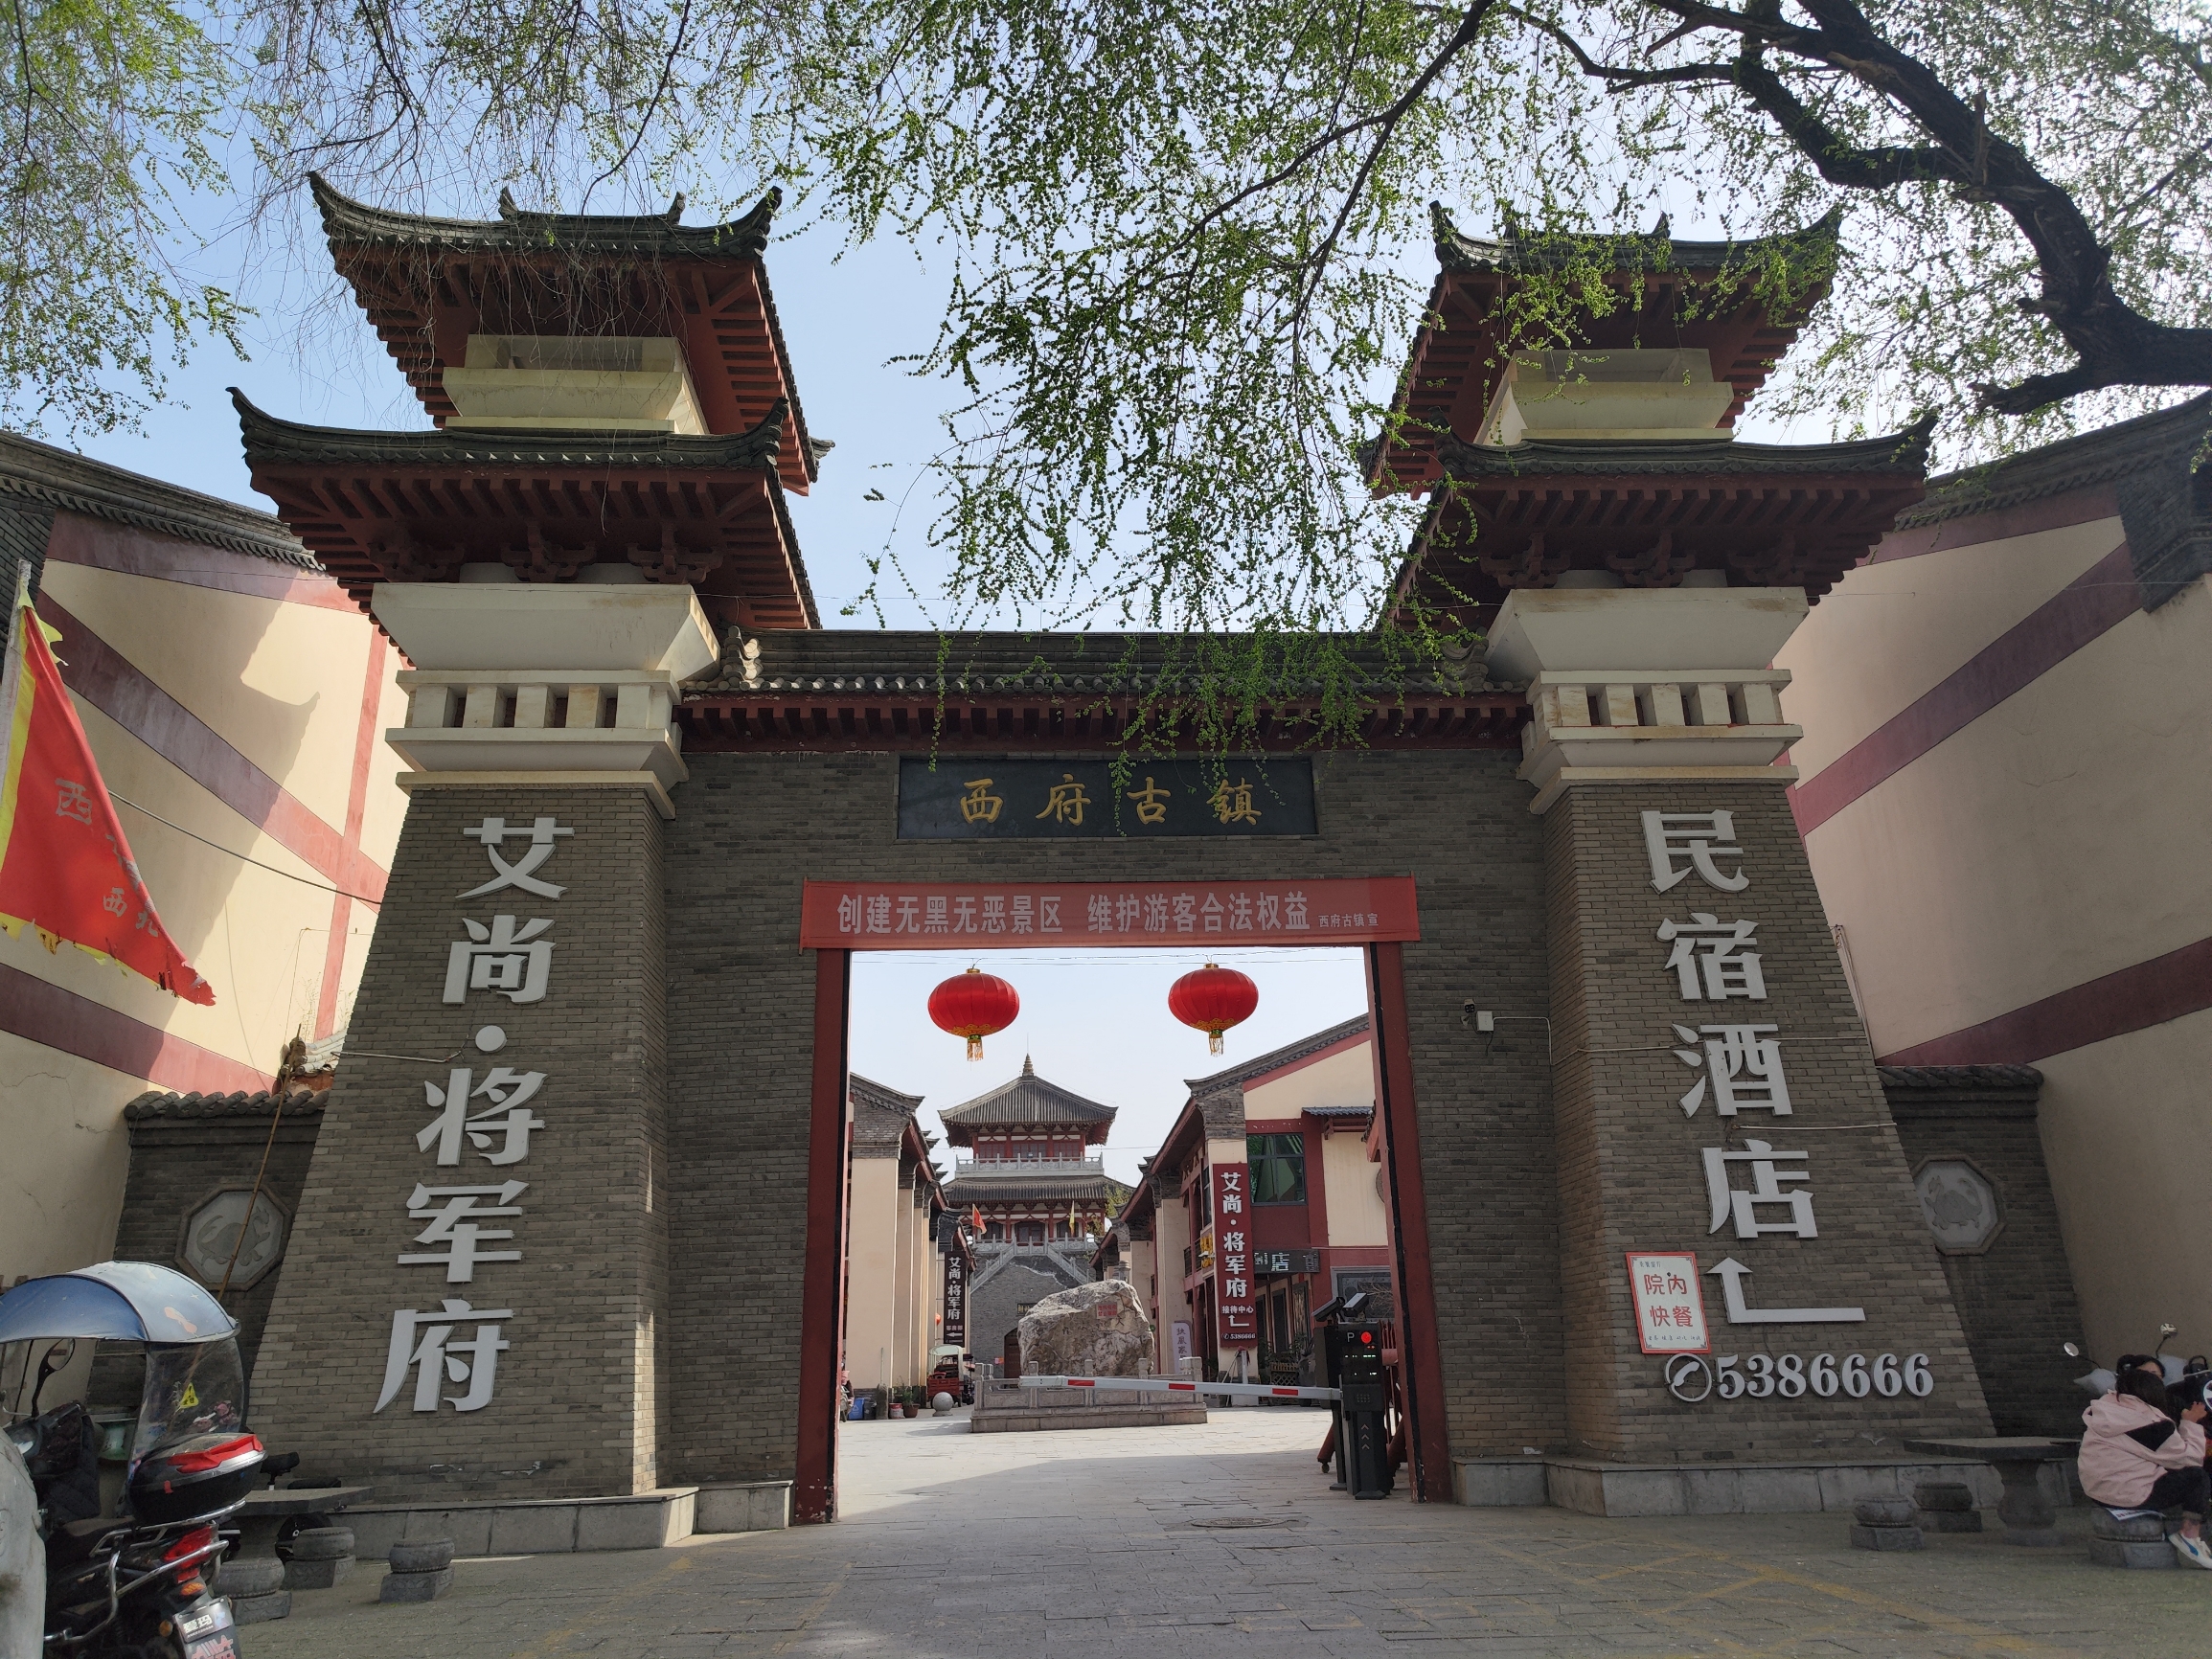 西府古镇坐落在陕西省宝鸡市扶风县城，是一个集民俗饮食、汉唐文化、影视拍摄、休闲购物、旅游观光为一体的